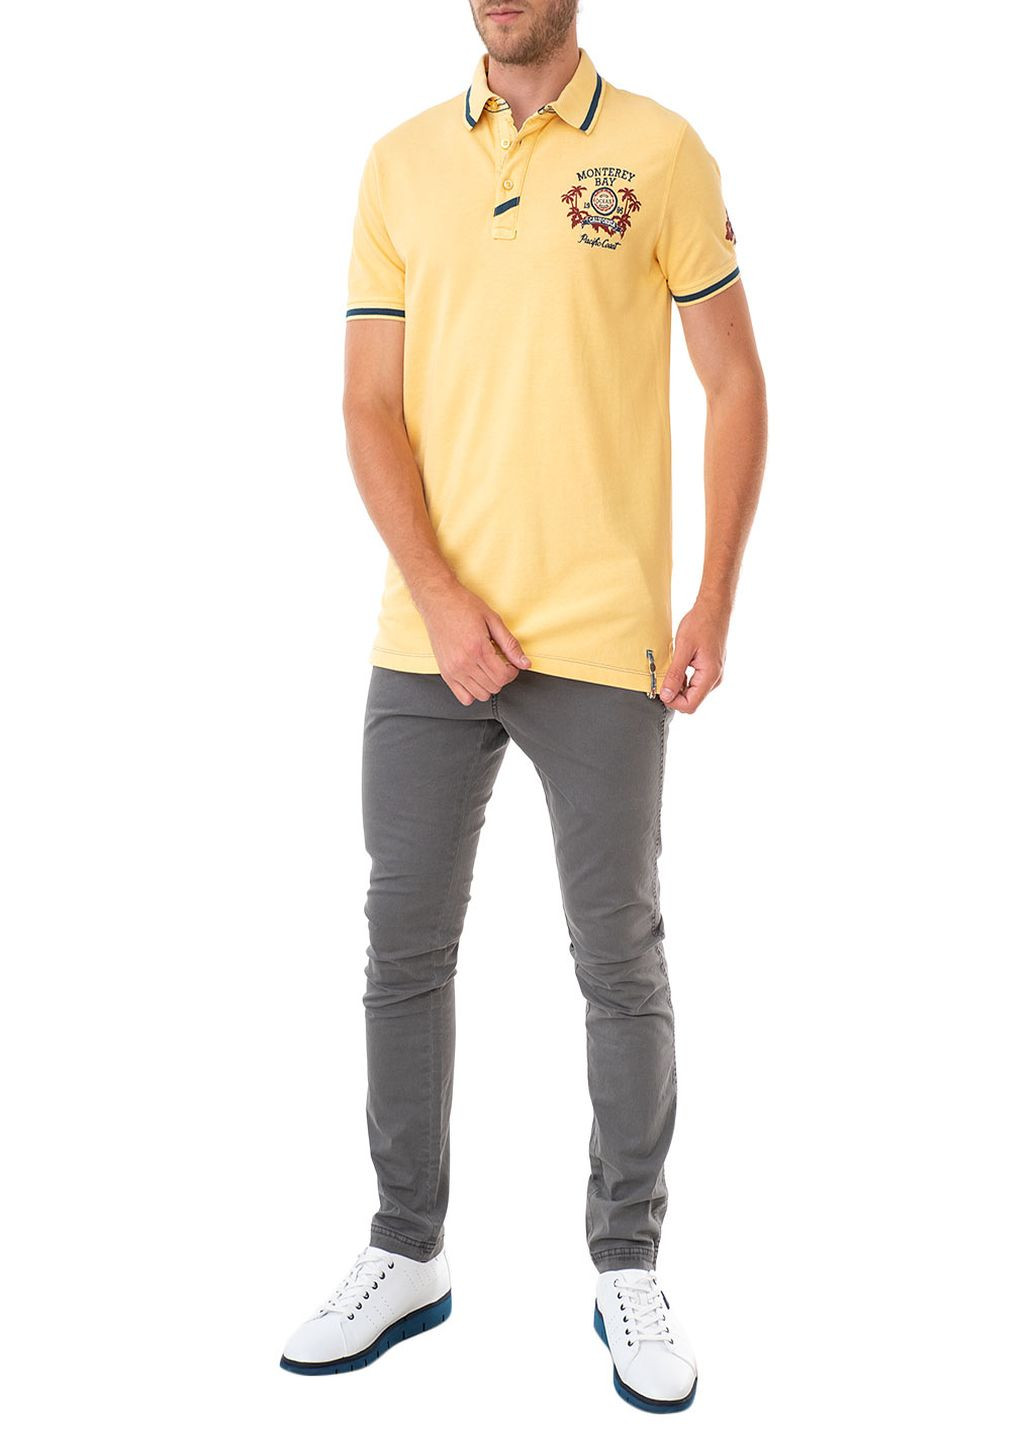 Желтая футболка-поло чоловіче для мужчин E-Bound однотонная